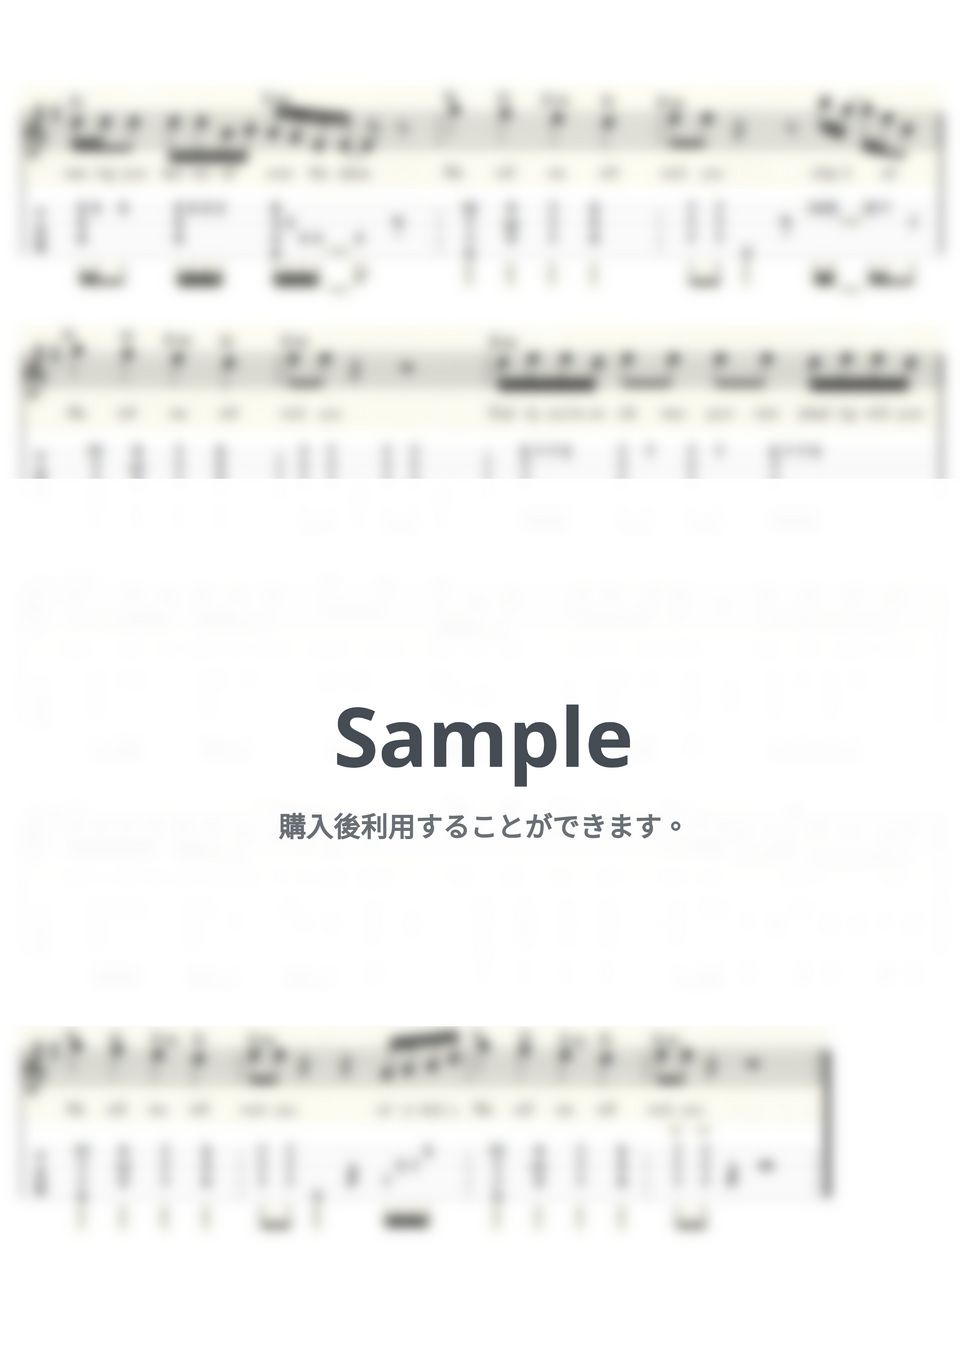 クイーン - We Will Rock You (ｳｸﾚﾚｿﾛ/Low-G/中級) by ukulelepapa